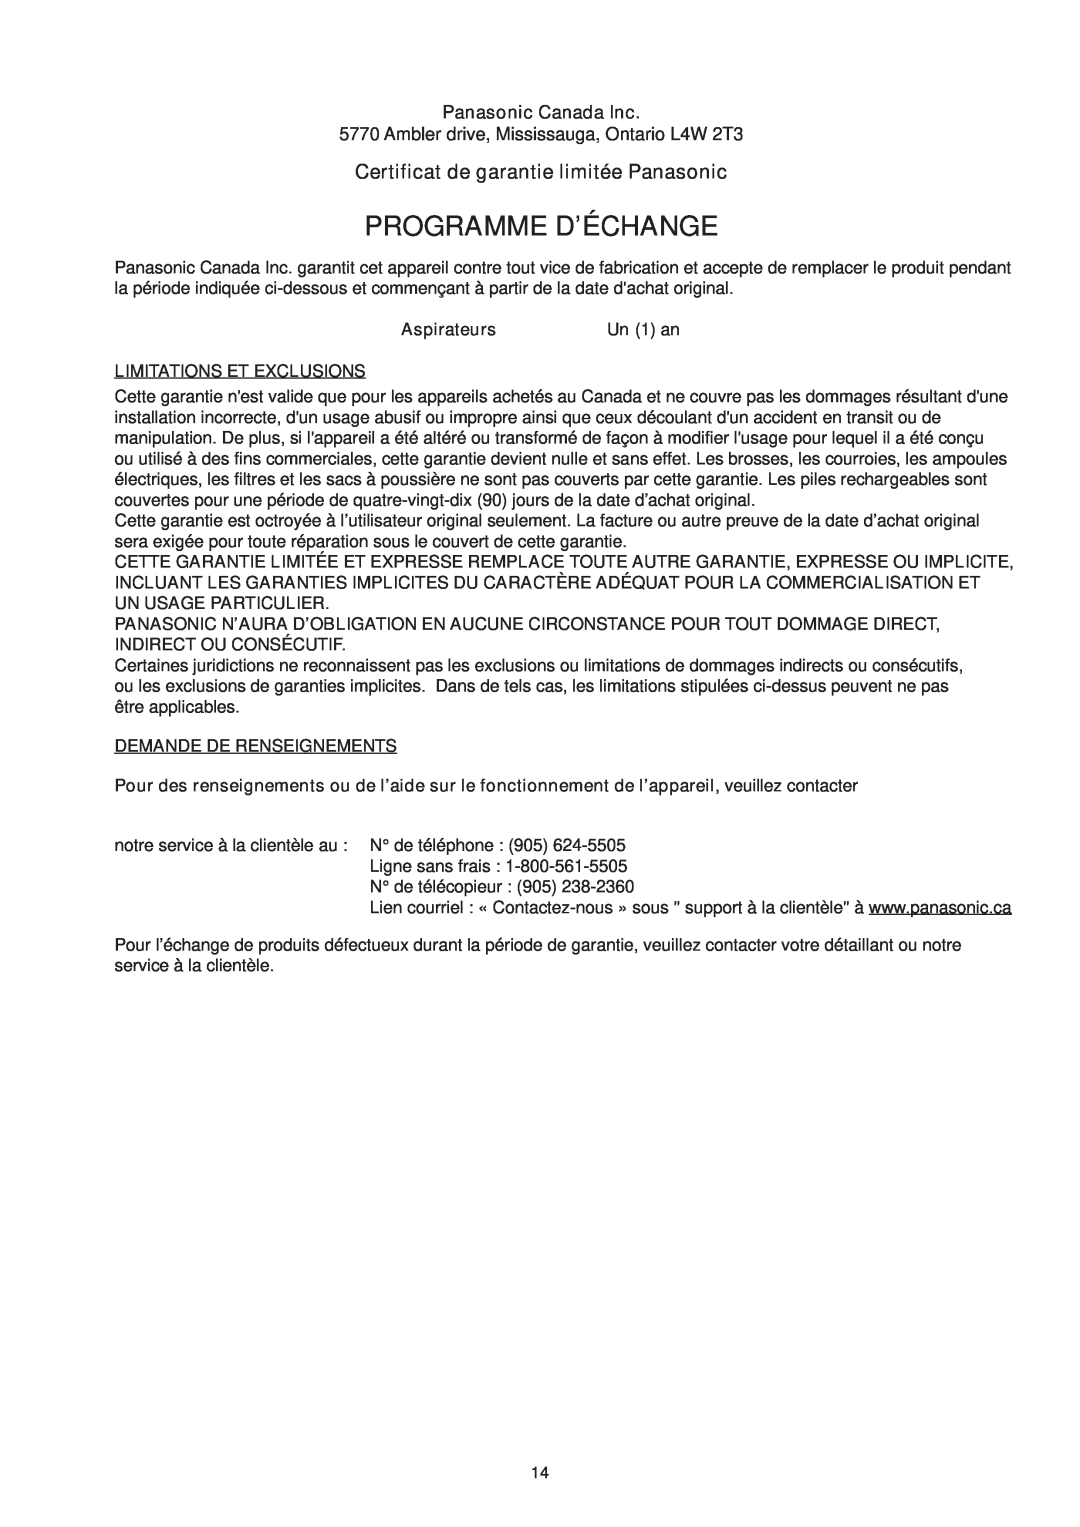 Panasonic Mccl485 manuel dutilisation Programme D’Échange, Certificat de garantie limitée Panasonic 